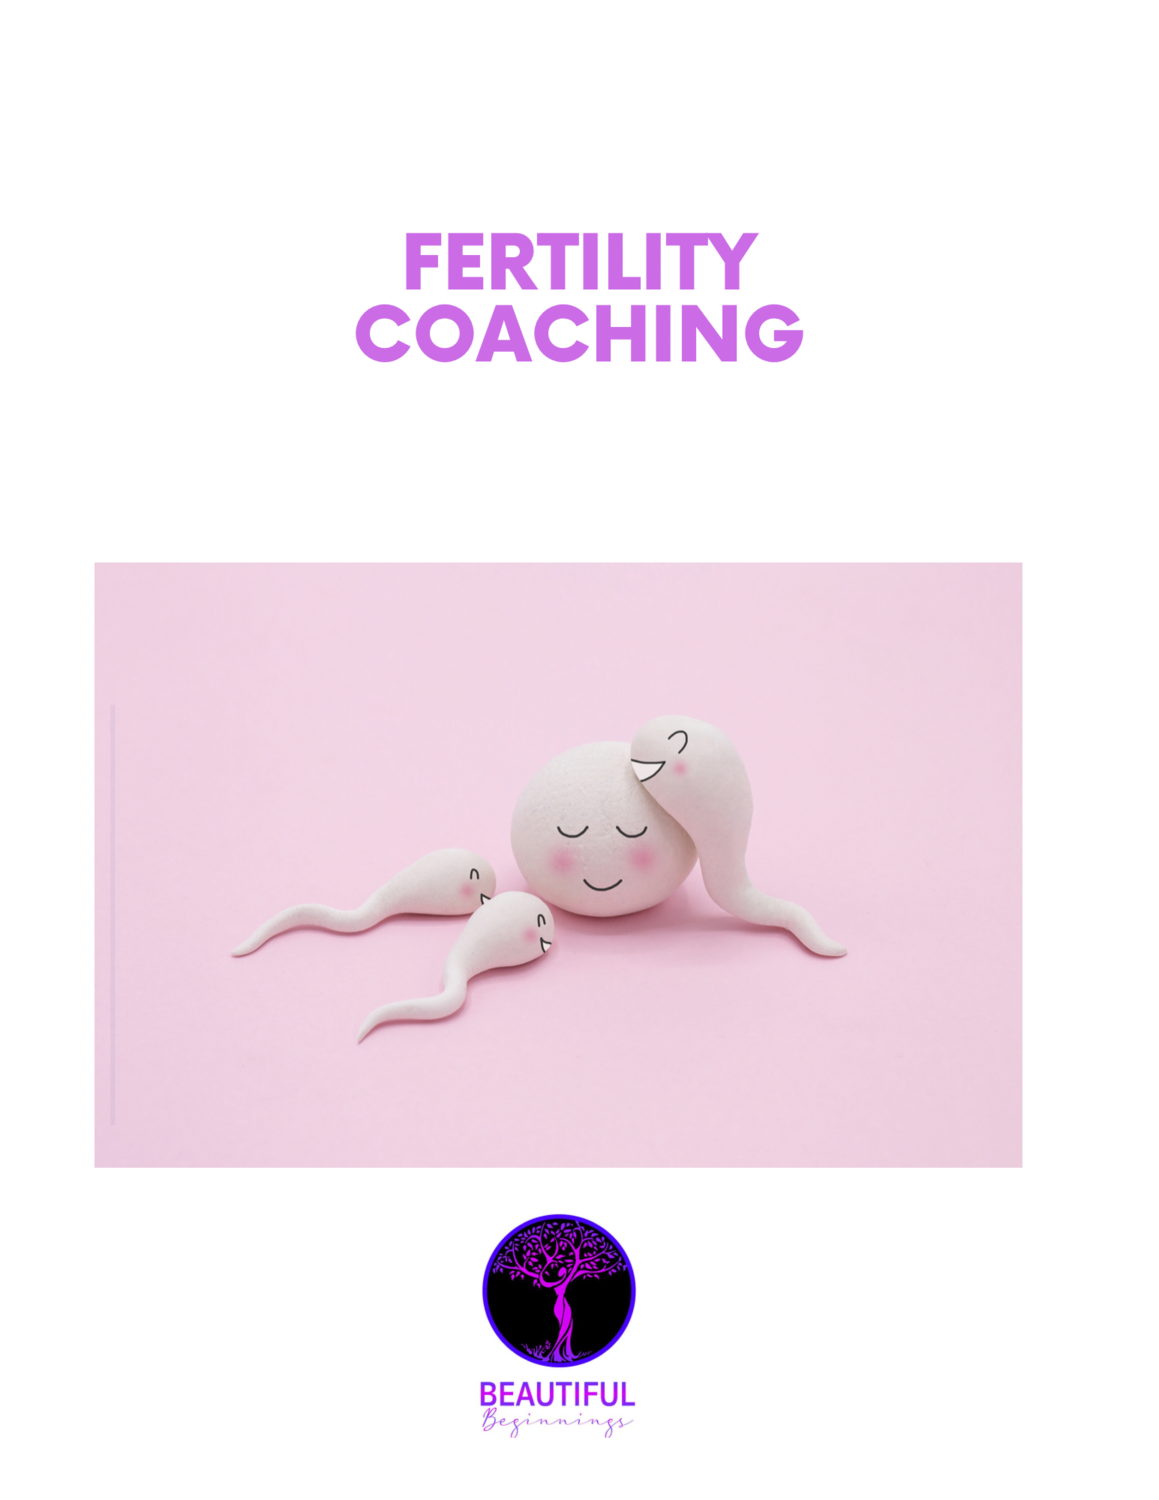 90 Day Fertility Coaching Program